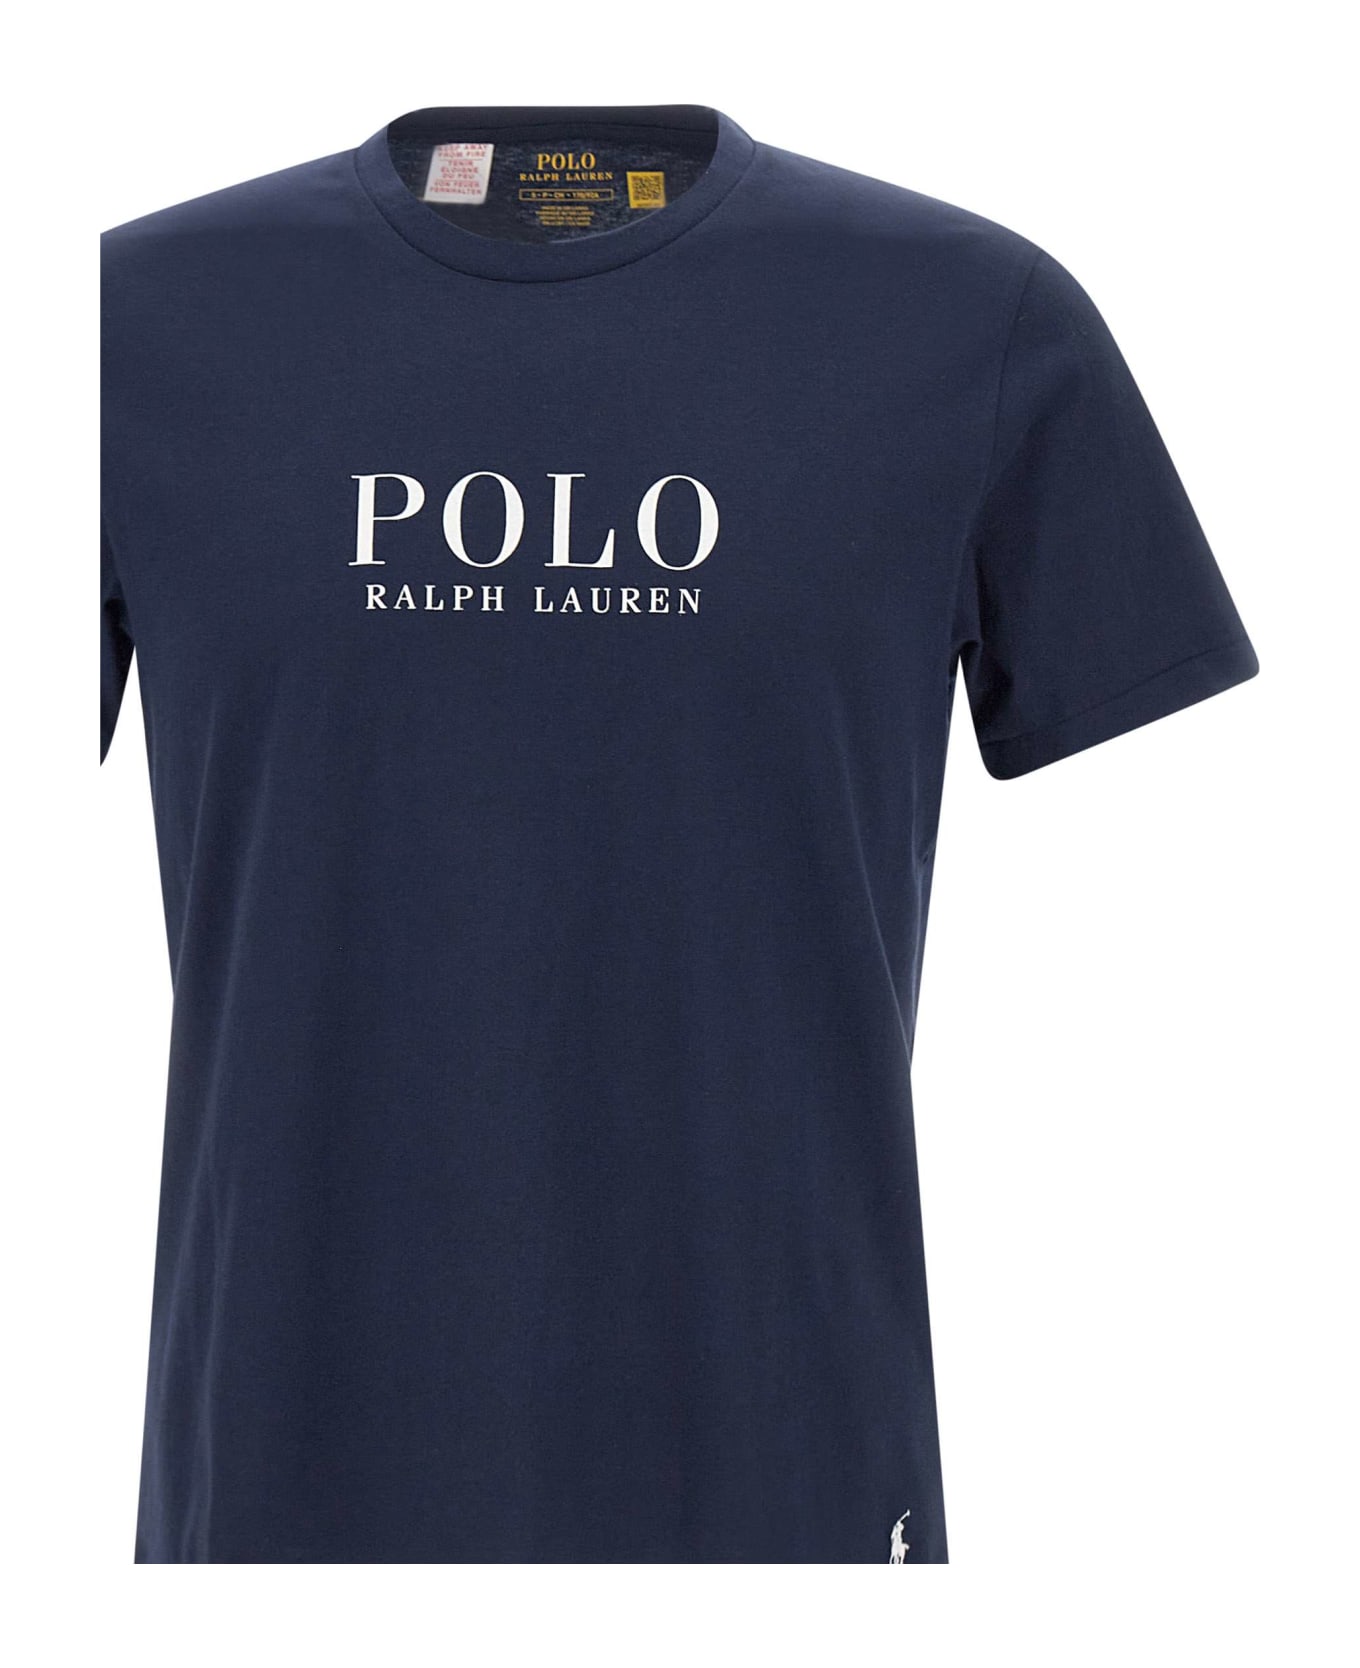 Polo Ralph Lauren Cotton T-shirt シャツ